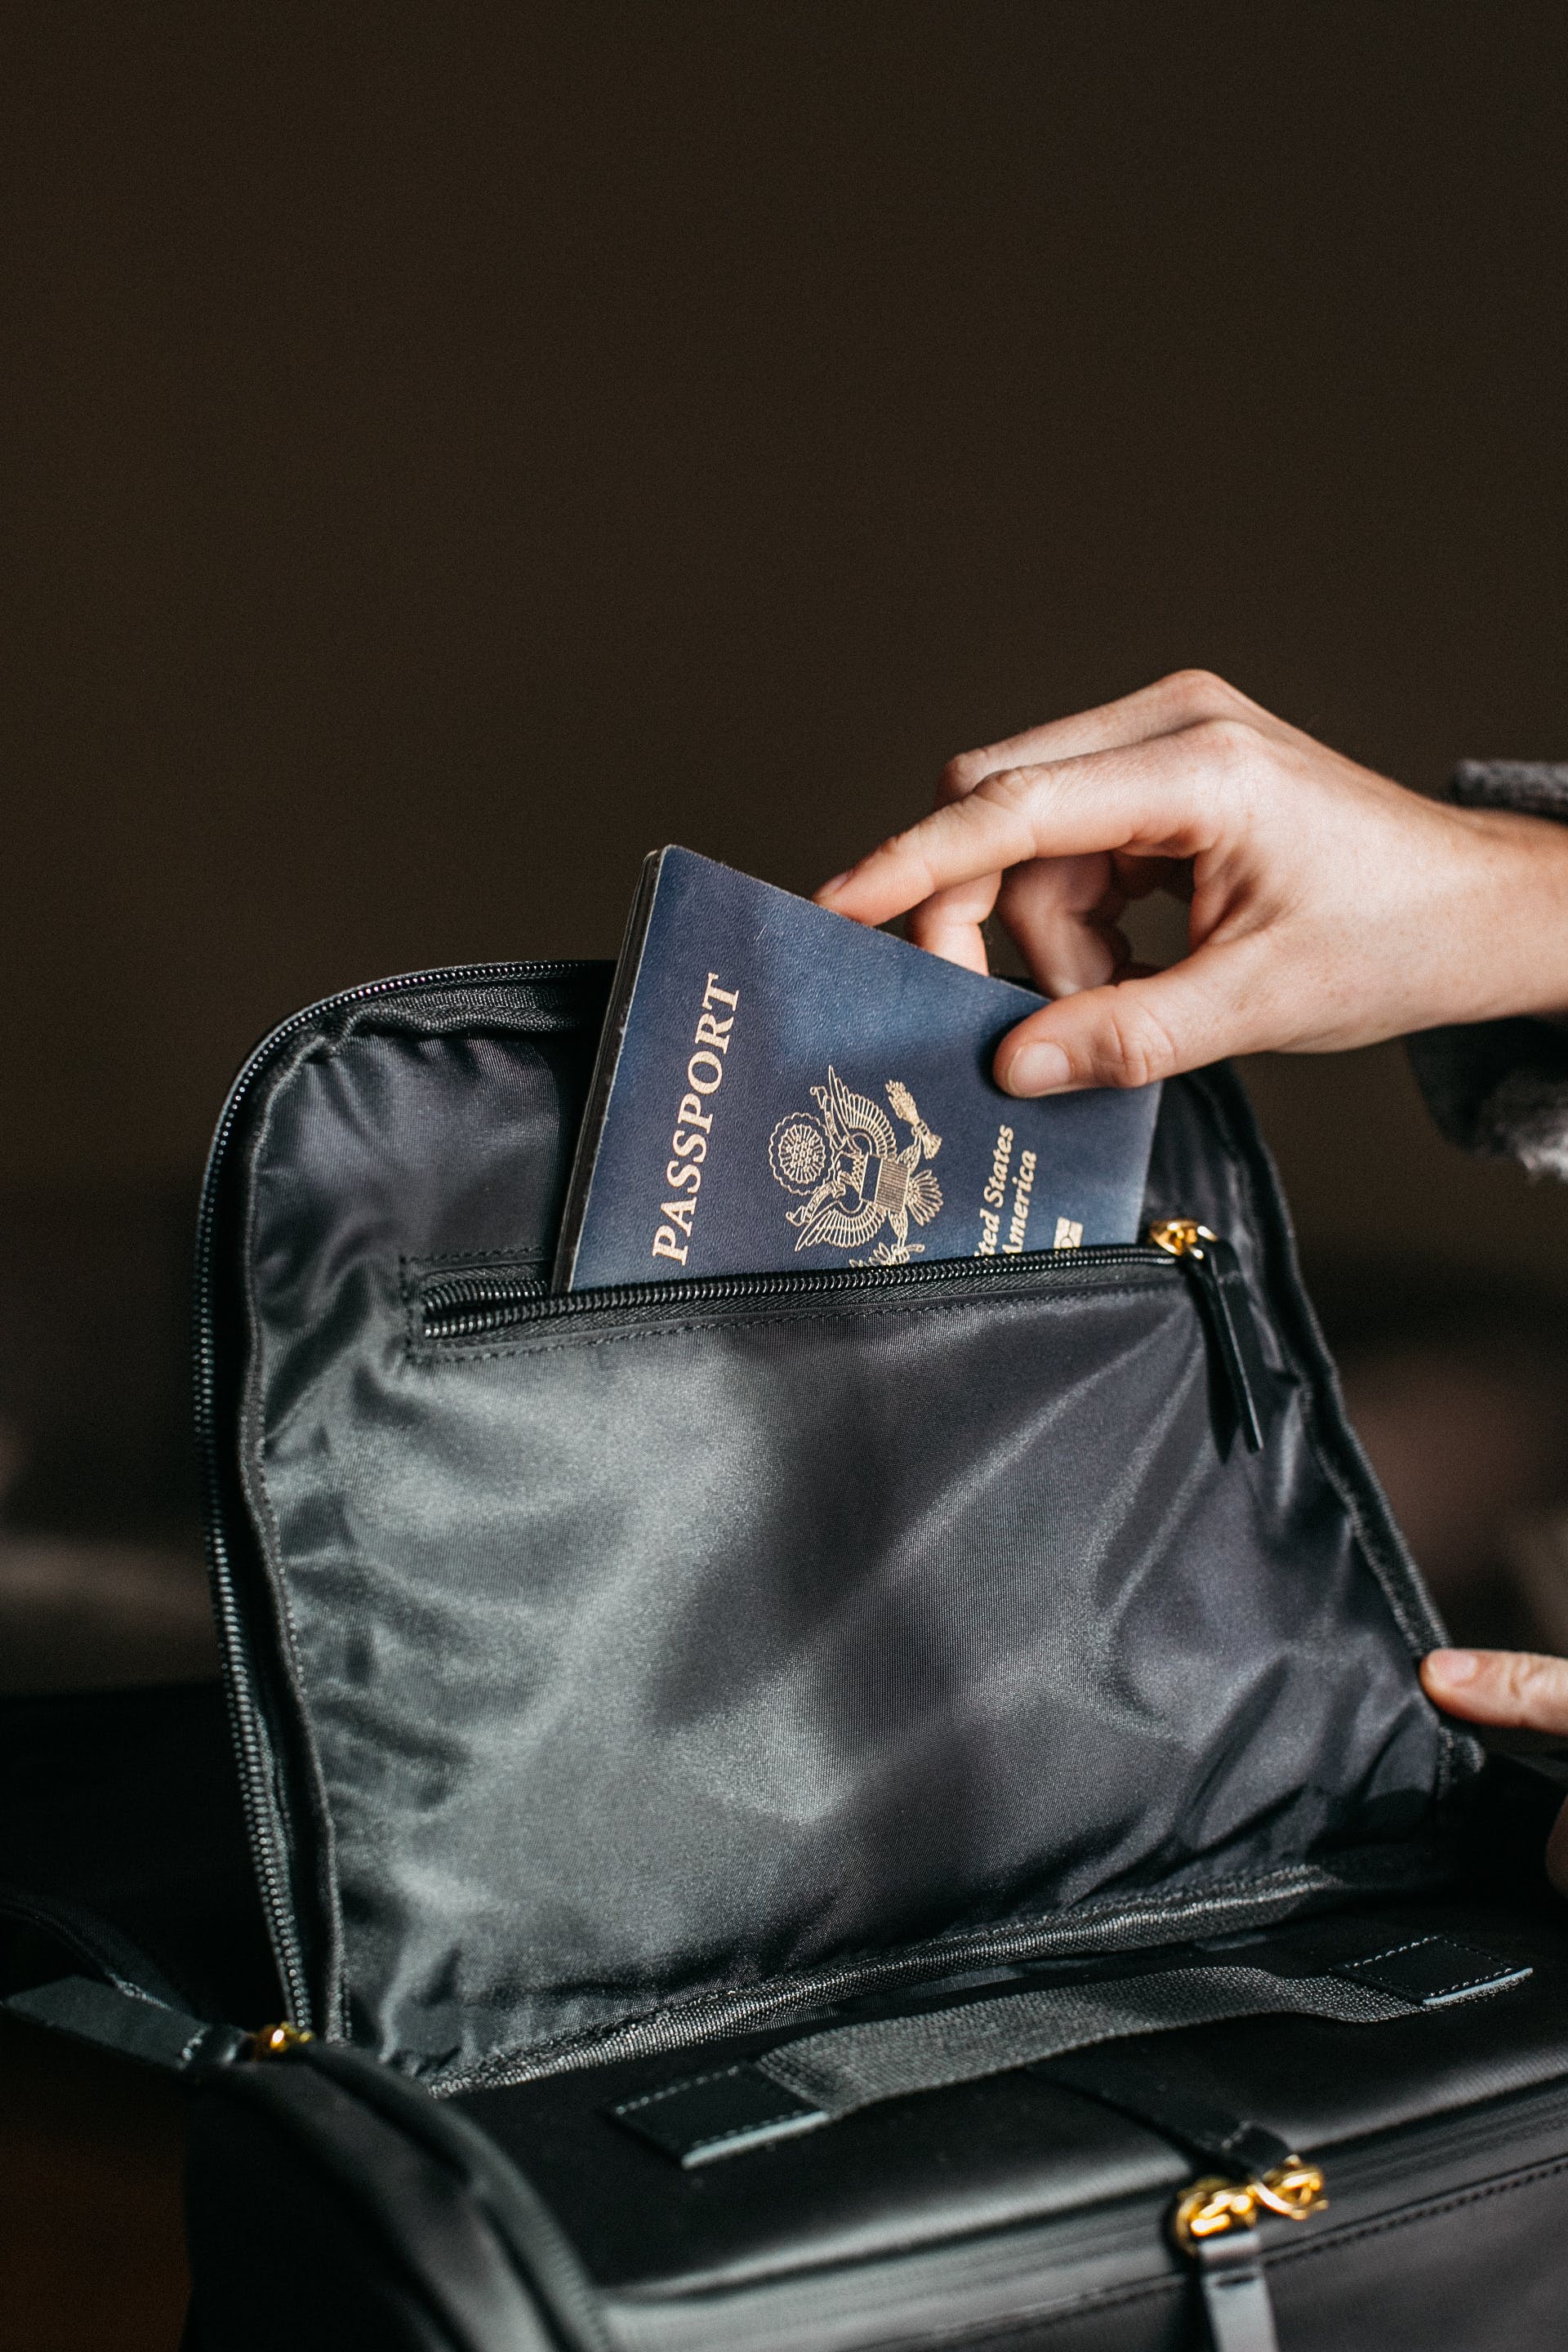 Una persona metiendo un pasaporte en una bolsa | Fuente: Pexels